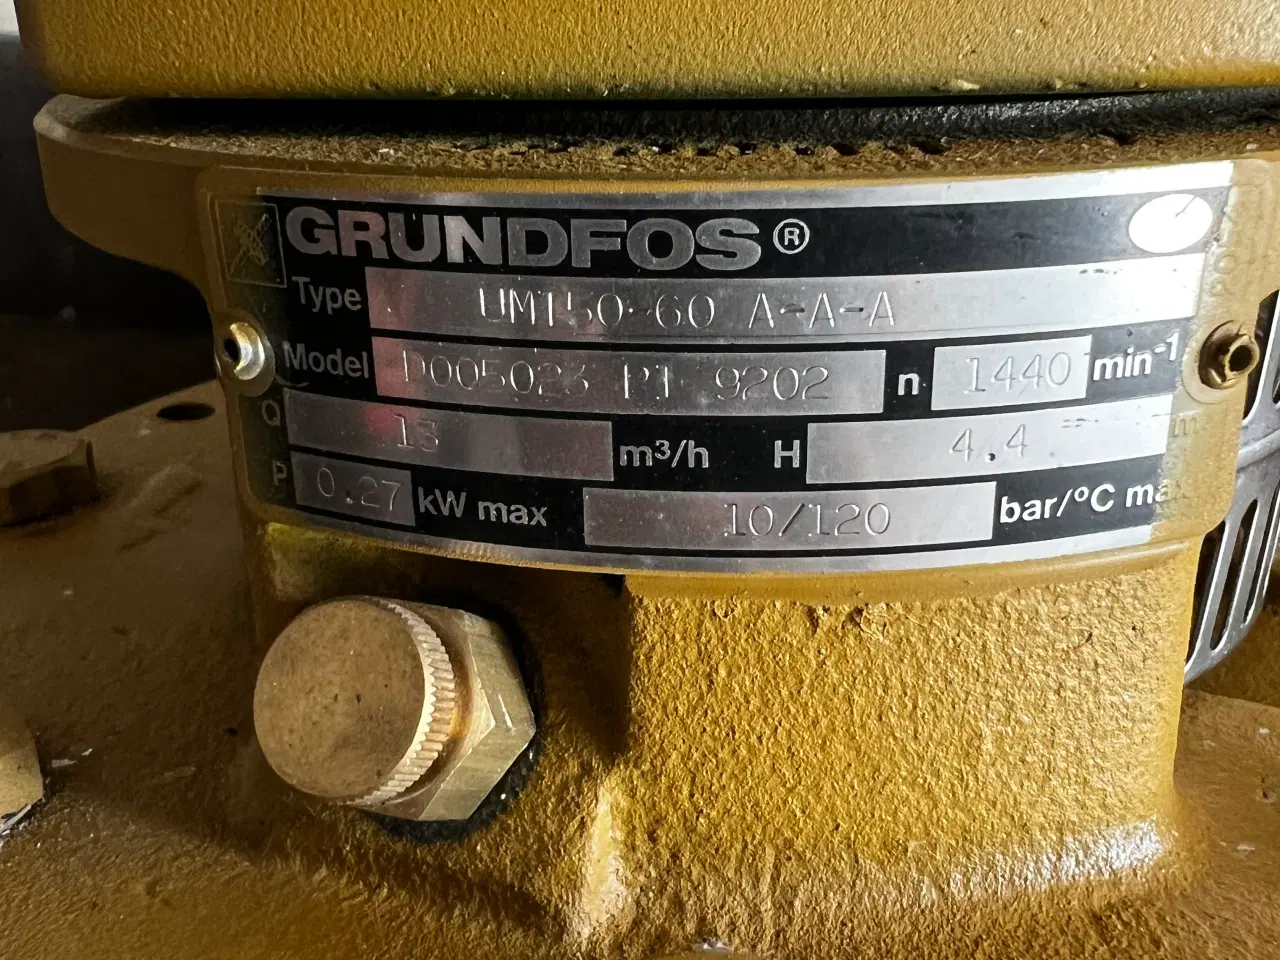 Billede 2 - Grunfos grundfos umt 50-60 a-a-a model d005023